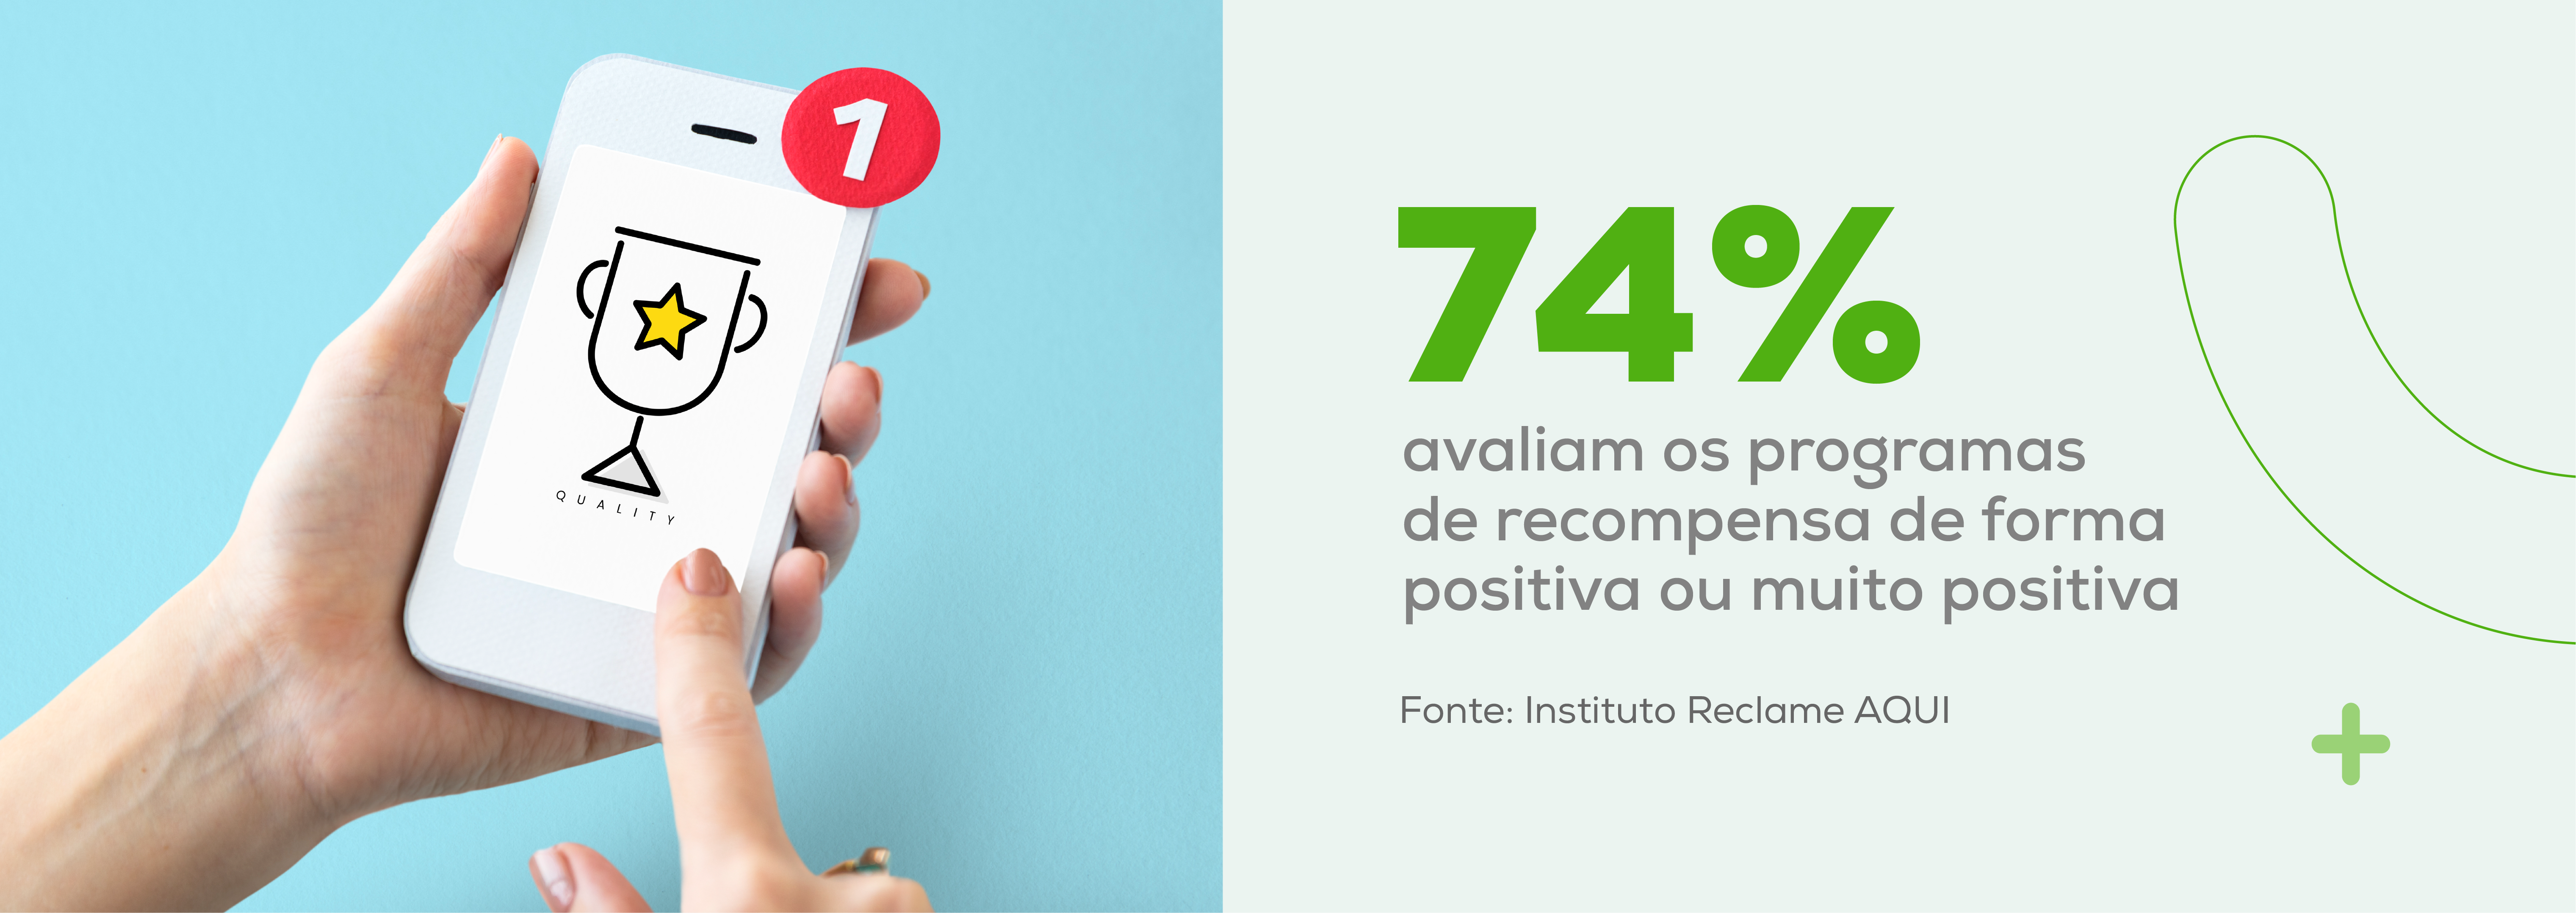 74% avaliam os programas de recompensa de forma positiva ou muito positiva